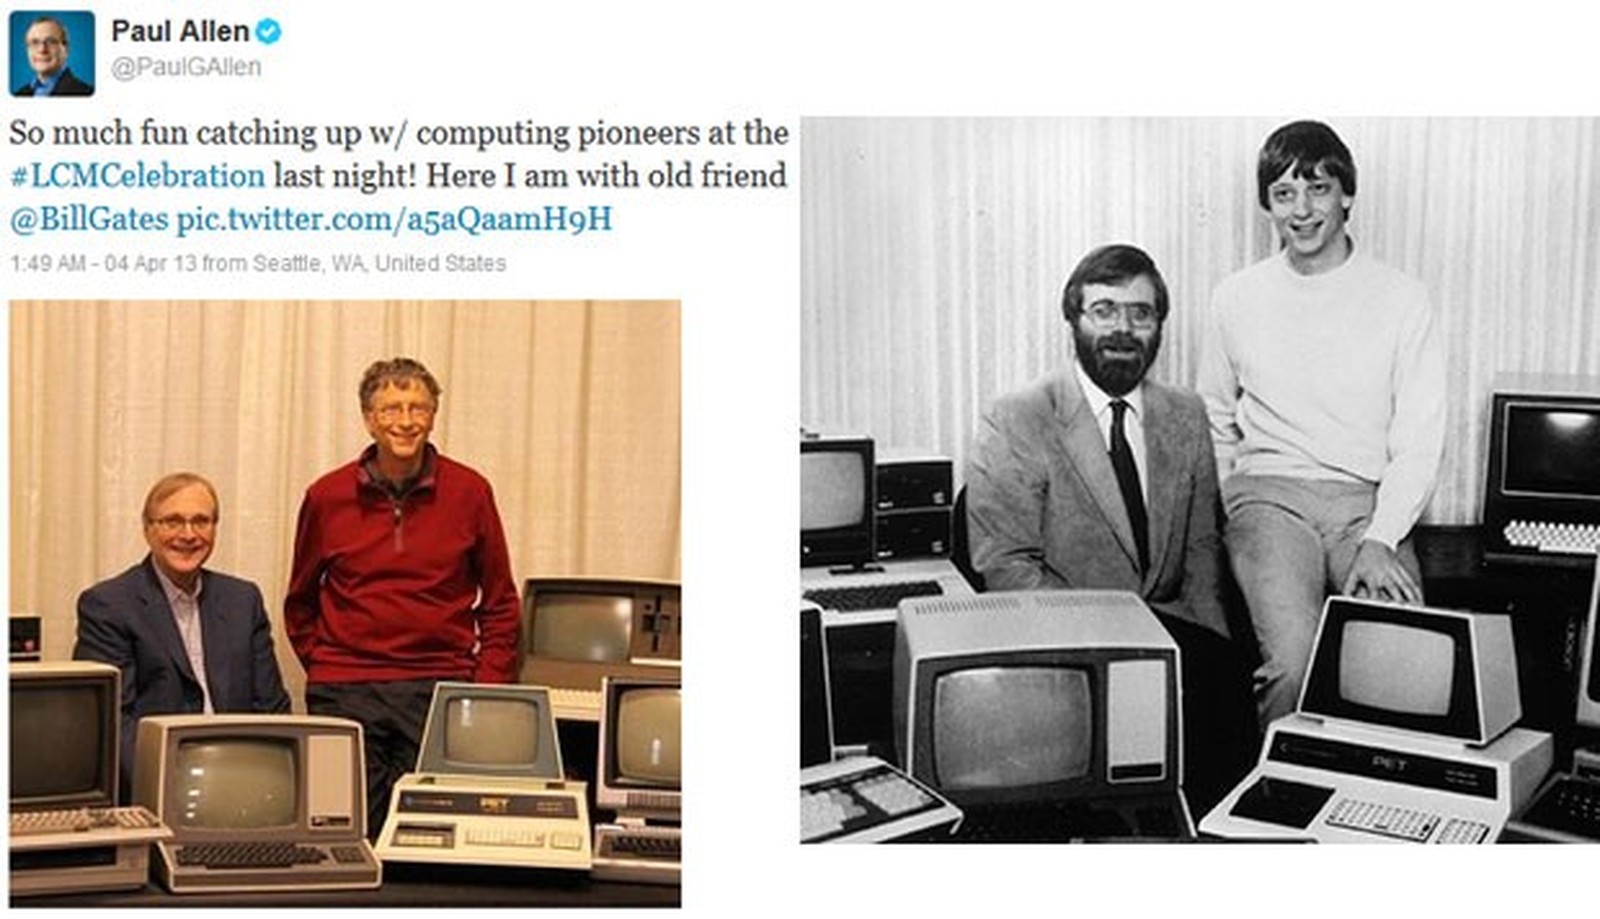 Morre Paul Allen, cofundador da Microsoft, aos 65 anos